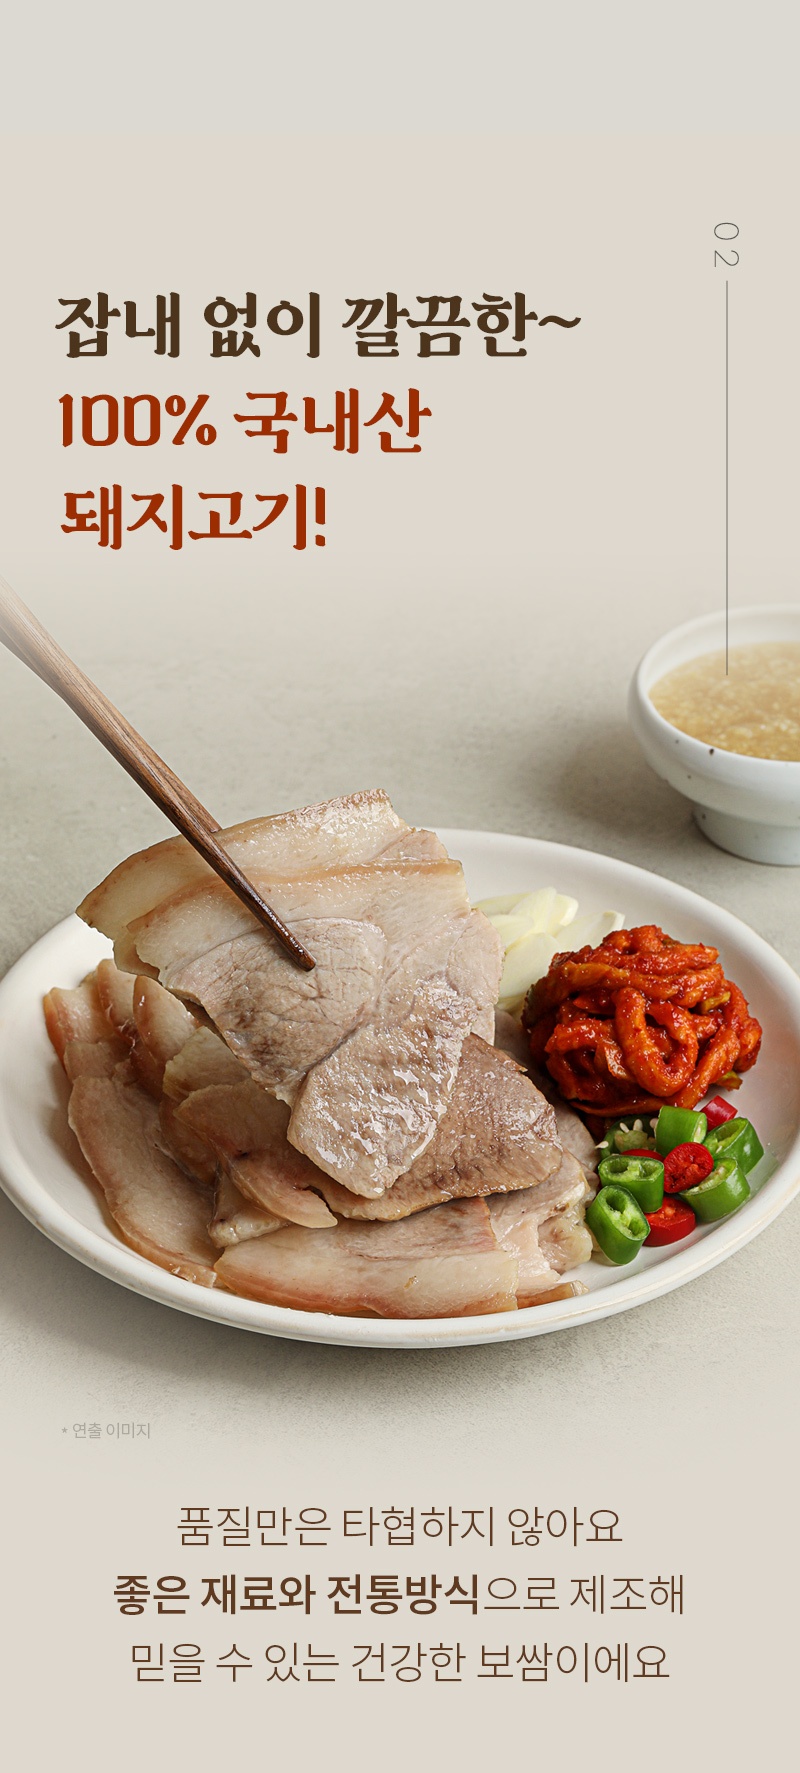 성수동905 마늘보쌈 체험단 모집 (08월 29일 ~ 09월 04일)